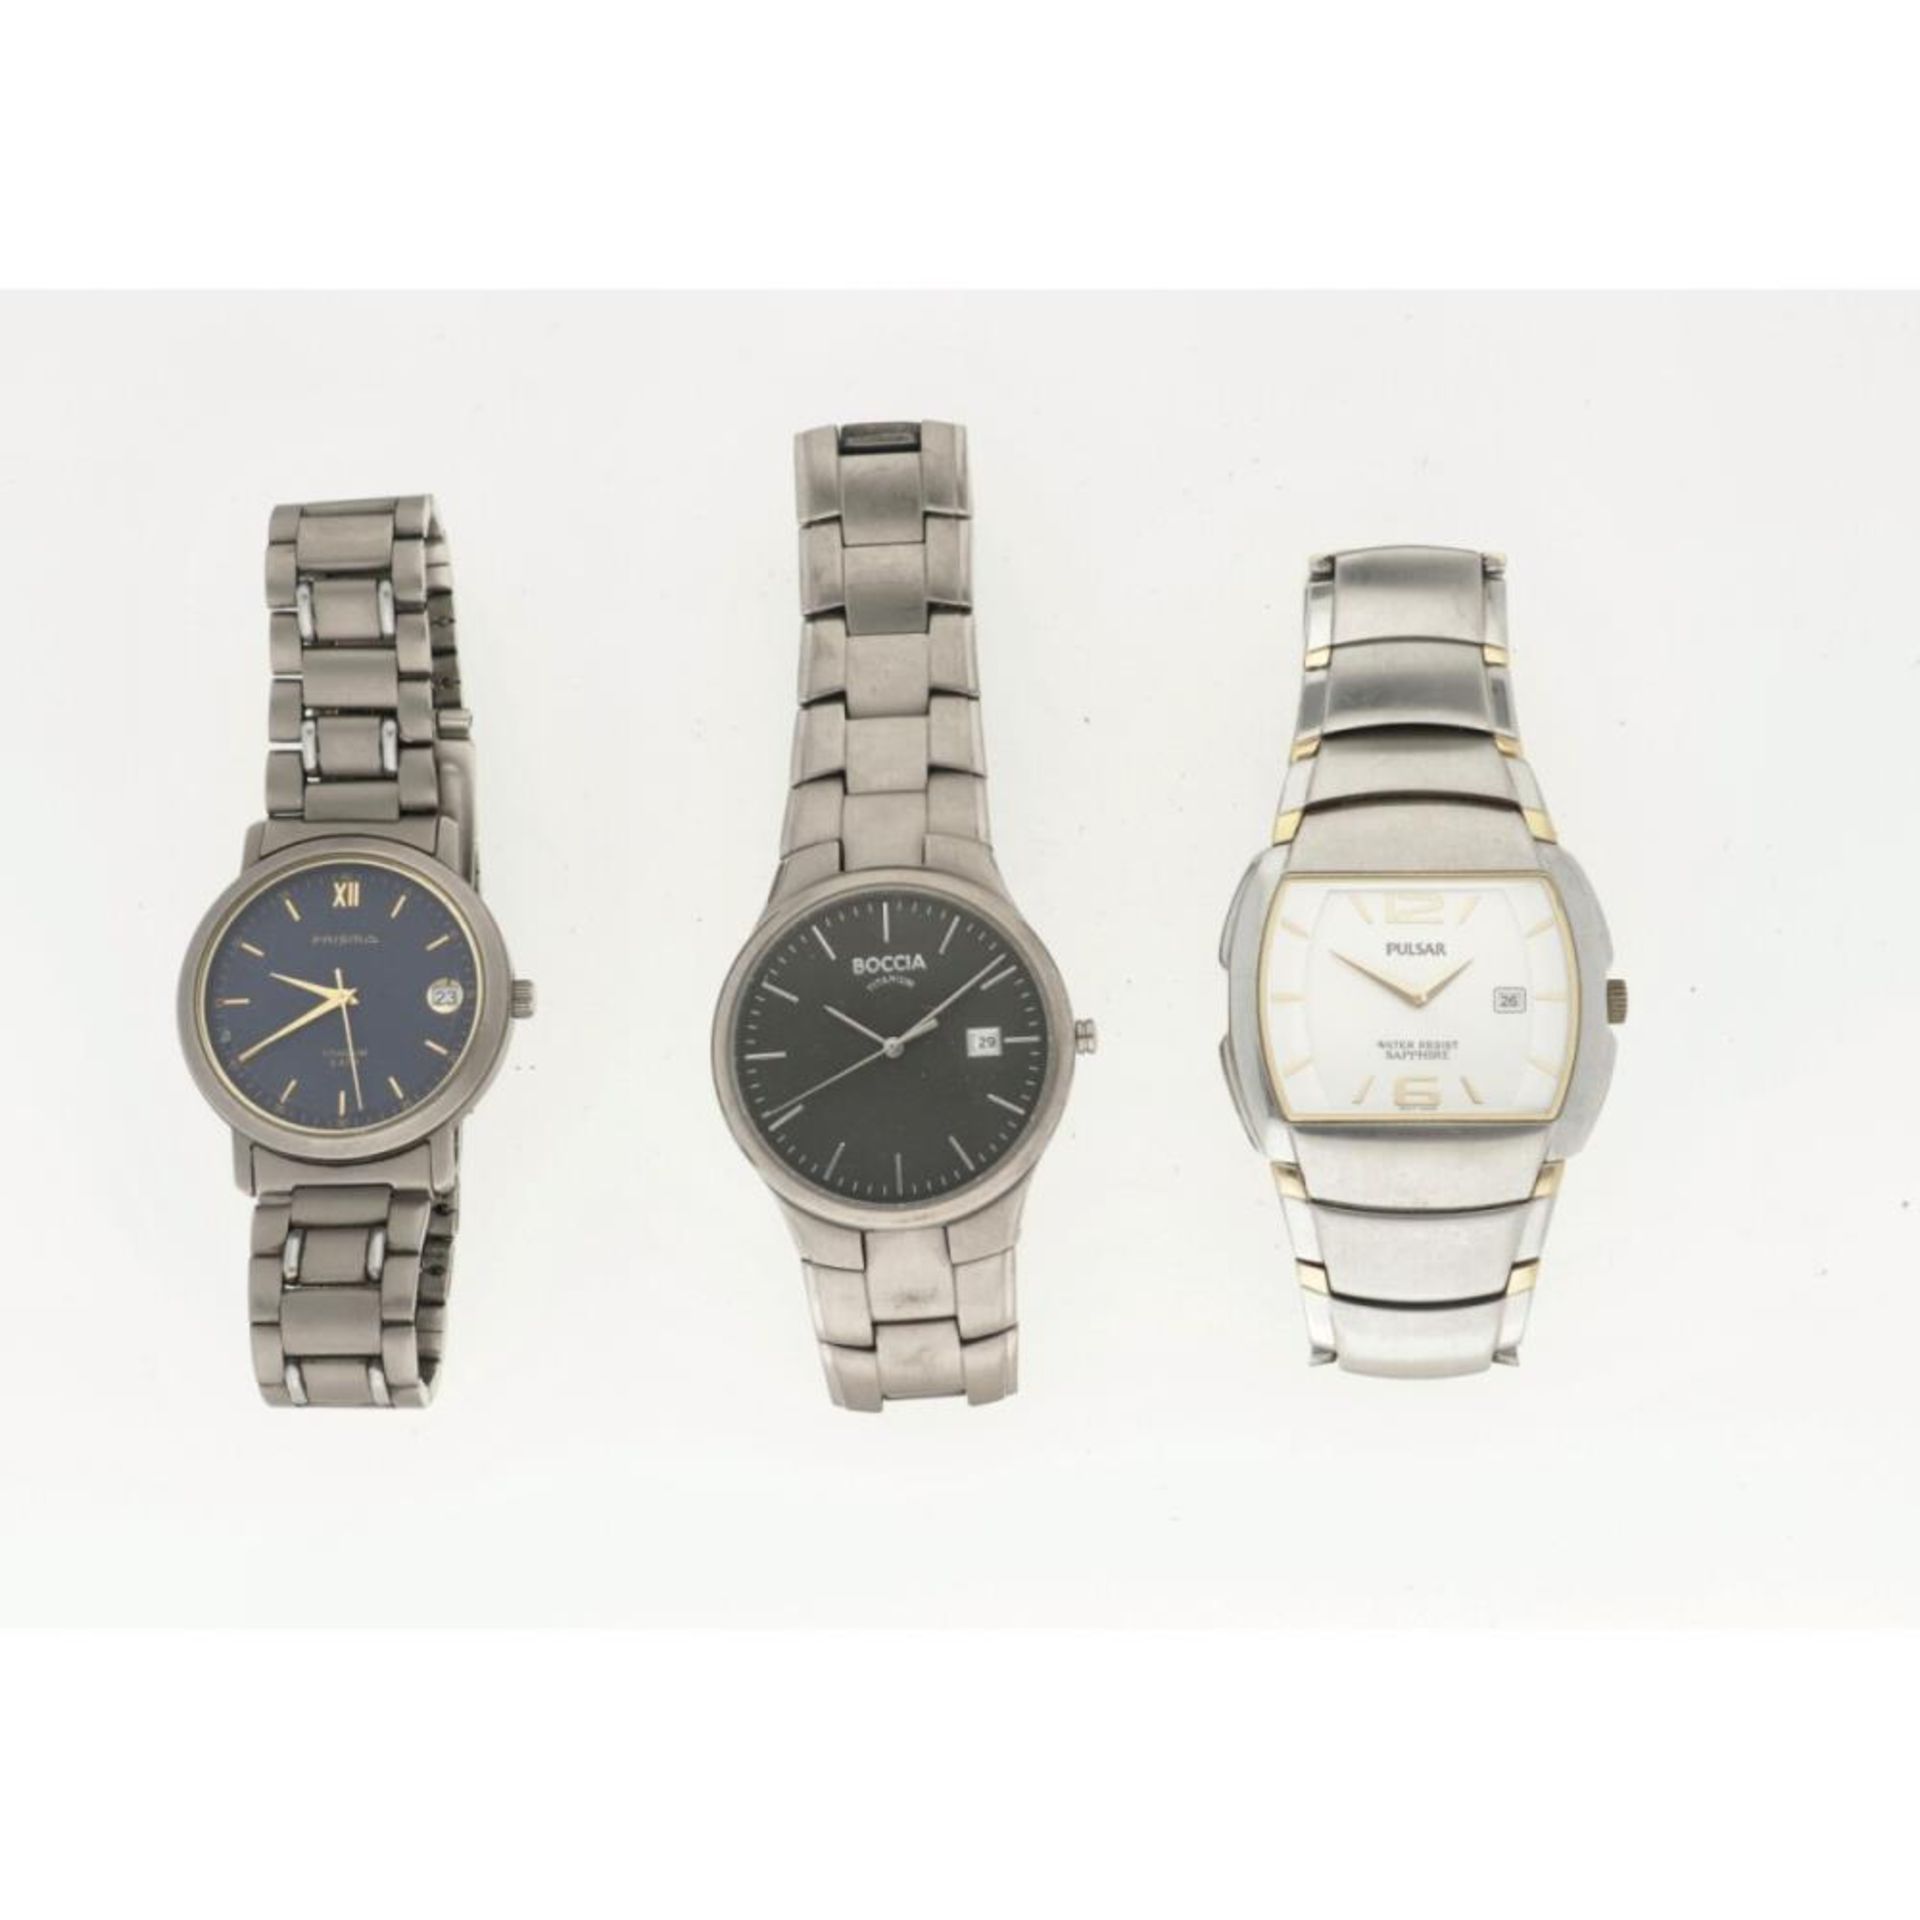 Lot (3) men's watches.